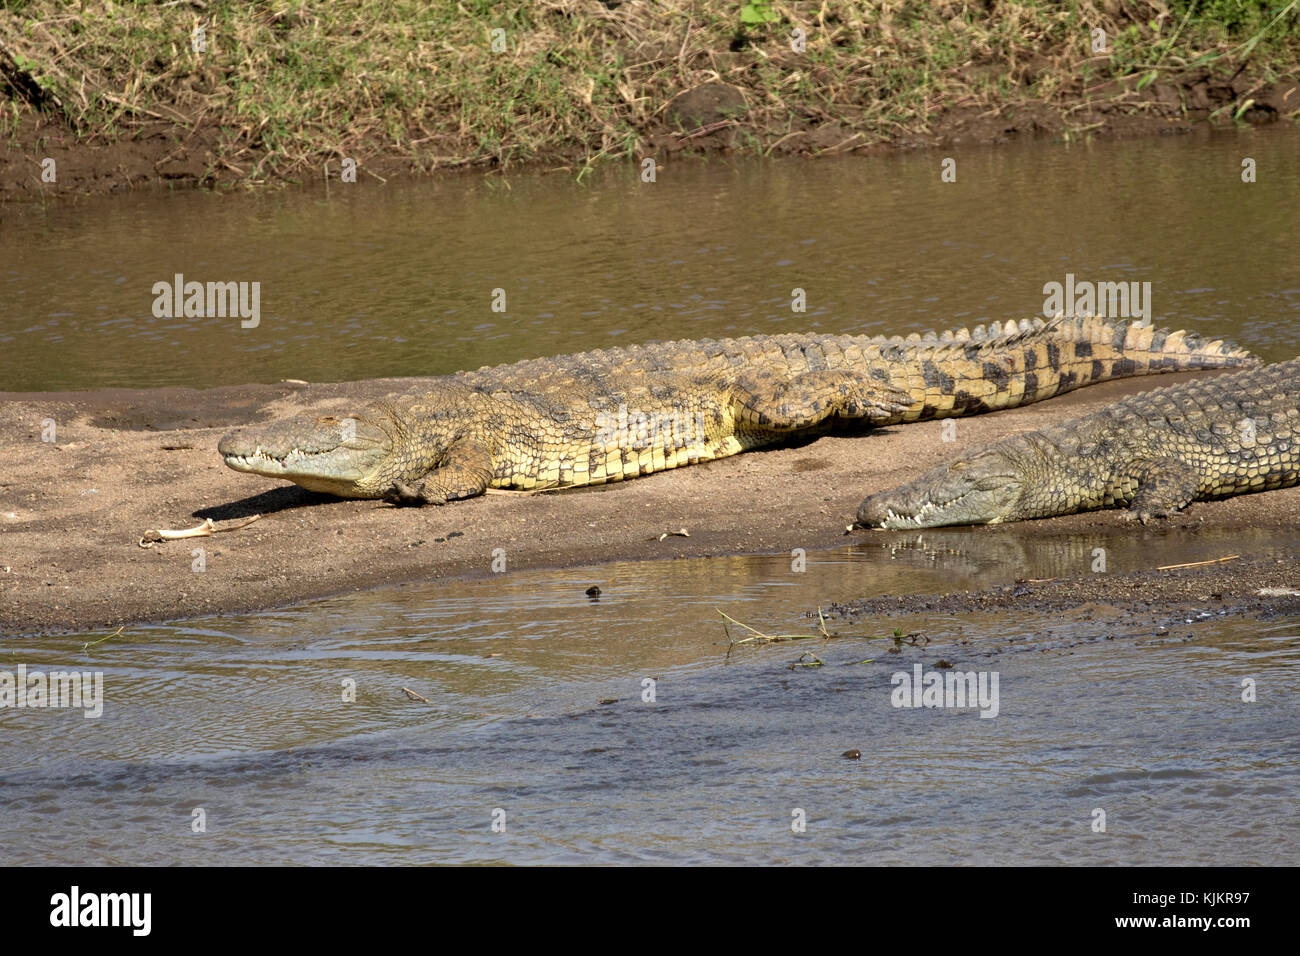 Le Parc National du Serengeti. Le crocodile du Nil (Crocodylus niloticus) reposant sur une rive du fleuve. La Tanzanie. Banque D'Images